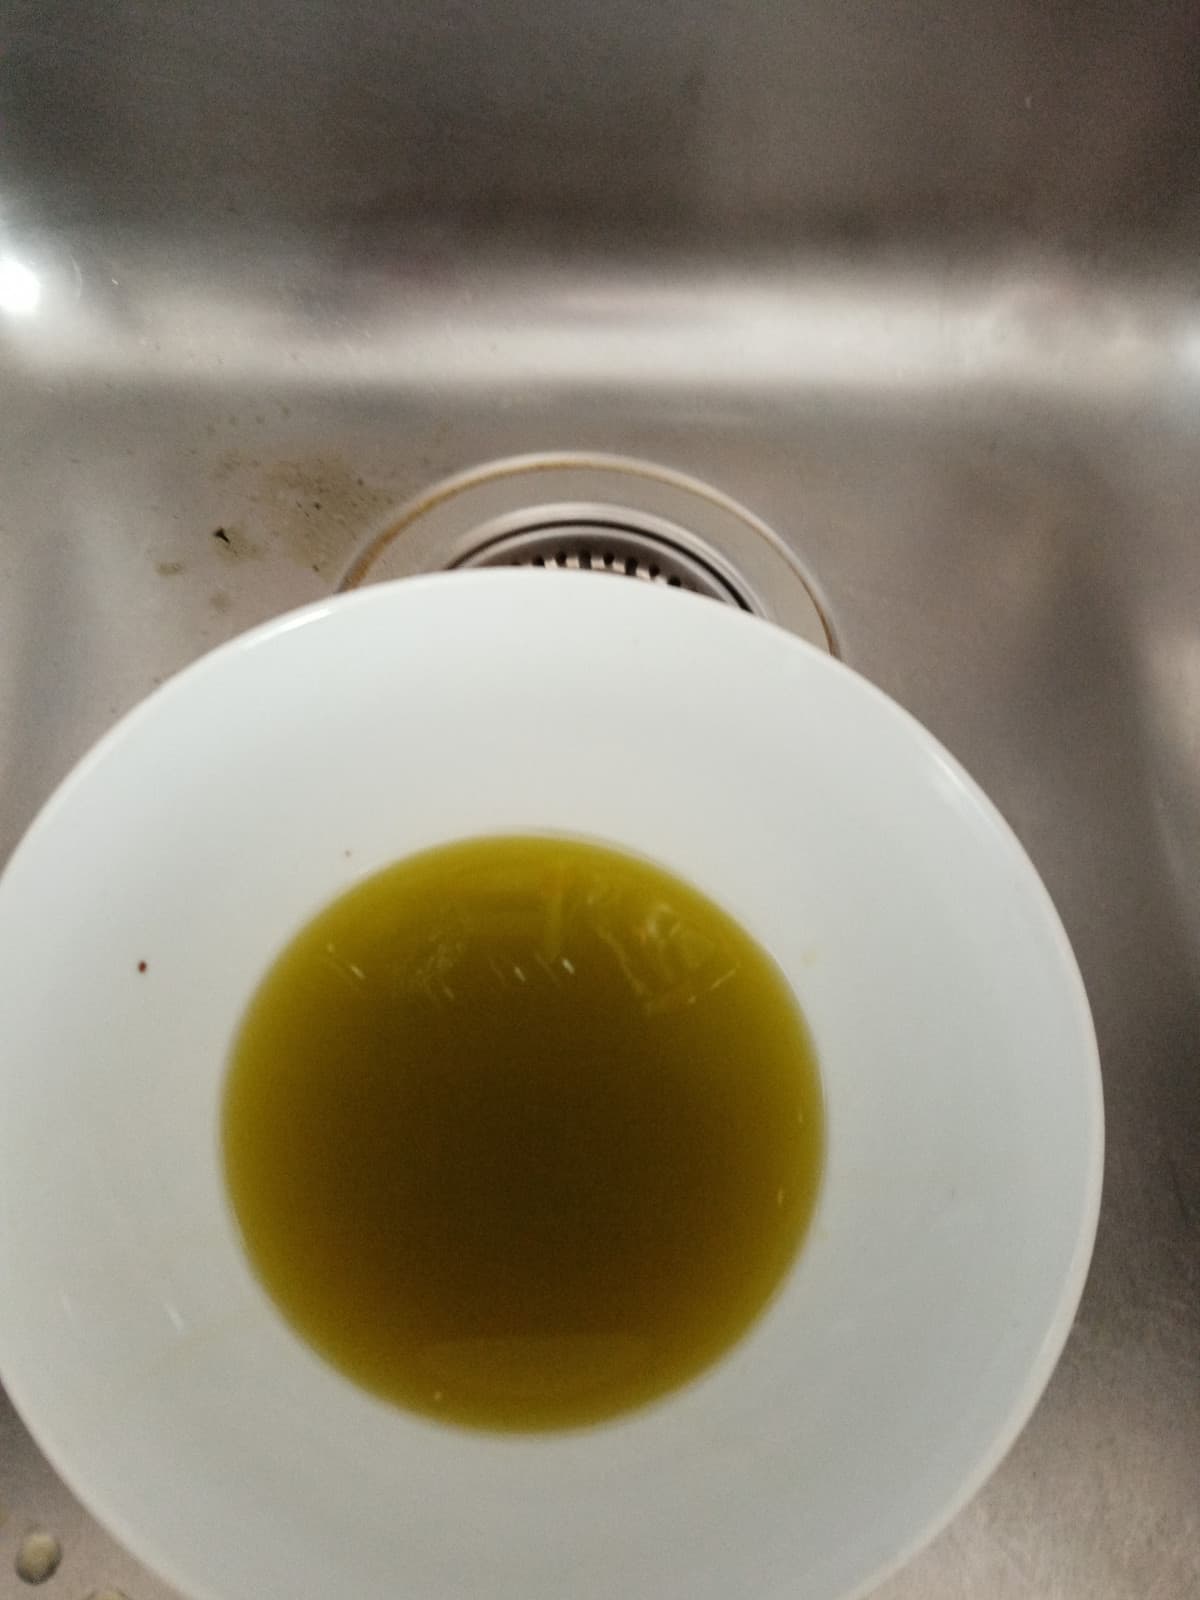 Amerregani continuate pure a usare l olio di semi, beccatevi st olio direttamente dal frantoio tho